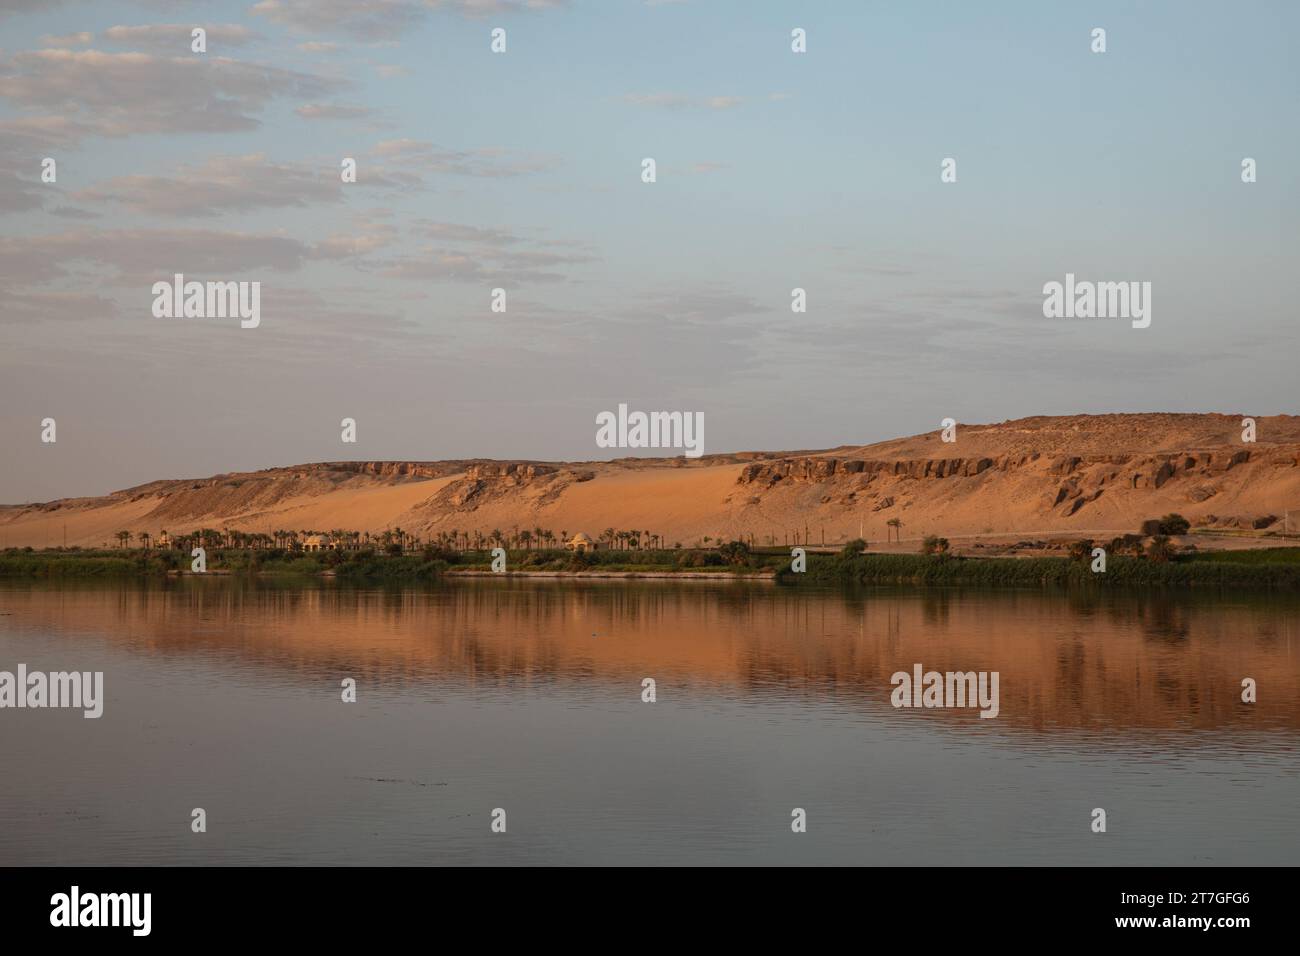 Collines de grès rouge et dunes de sable s'élèvent au-dessus de l'oasis sur les rives du Nil Banque D'Images